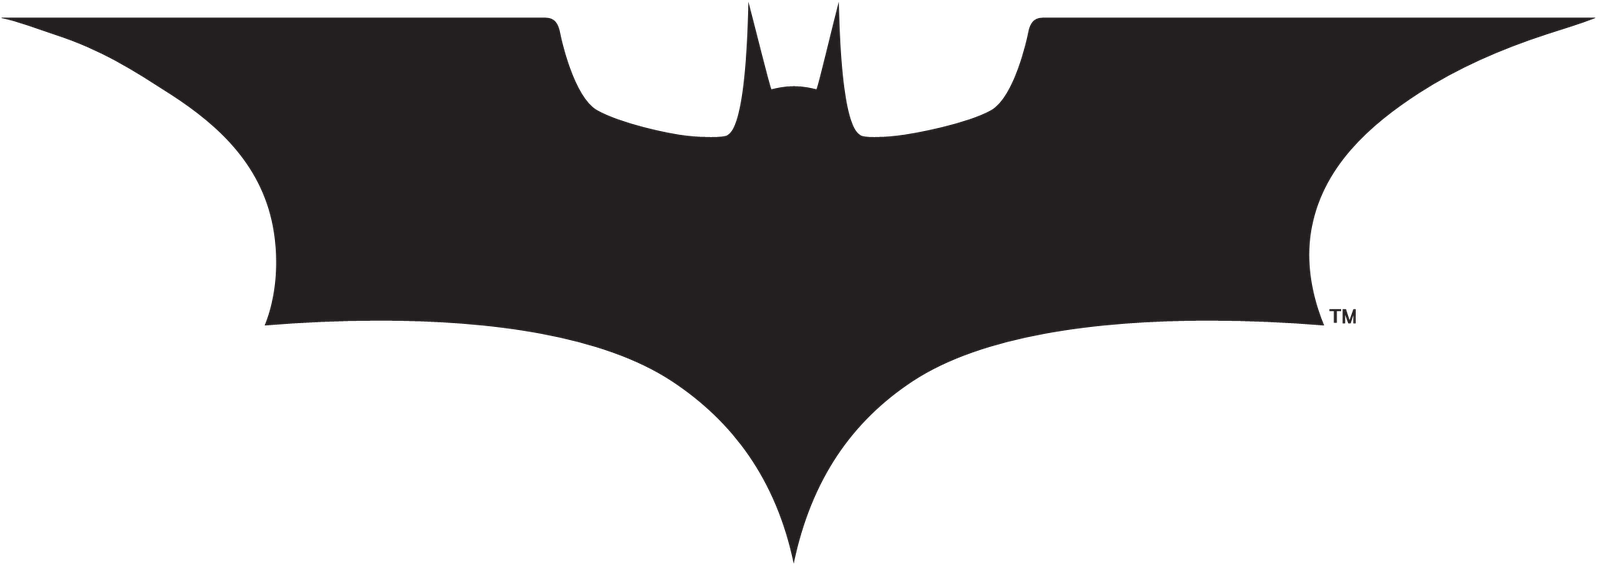 Batman The Flash Stencil Bat-signal Clip Art - Batman Png (1600x640)